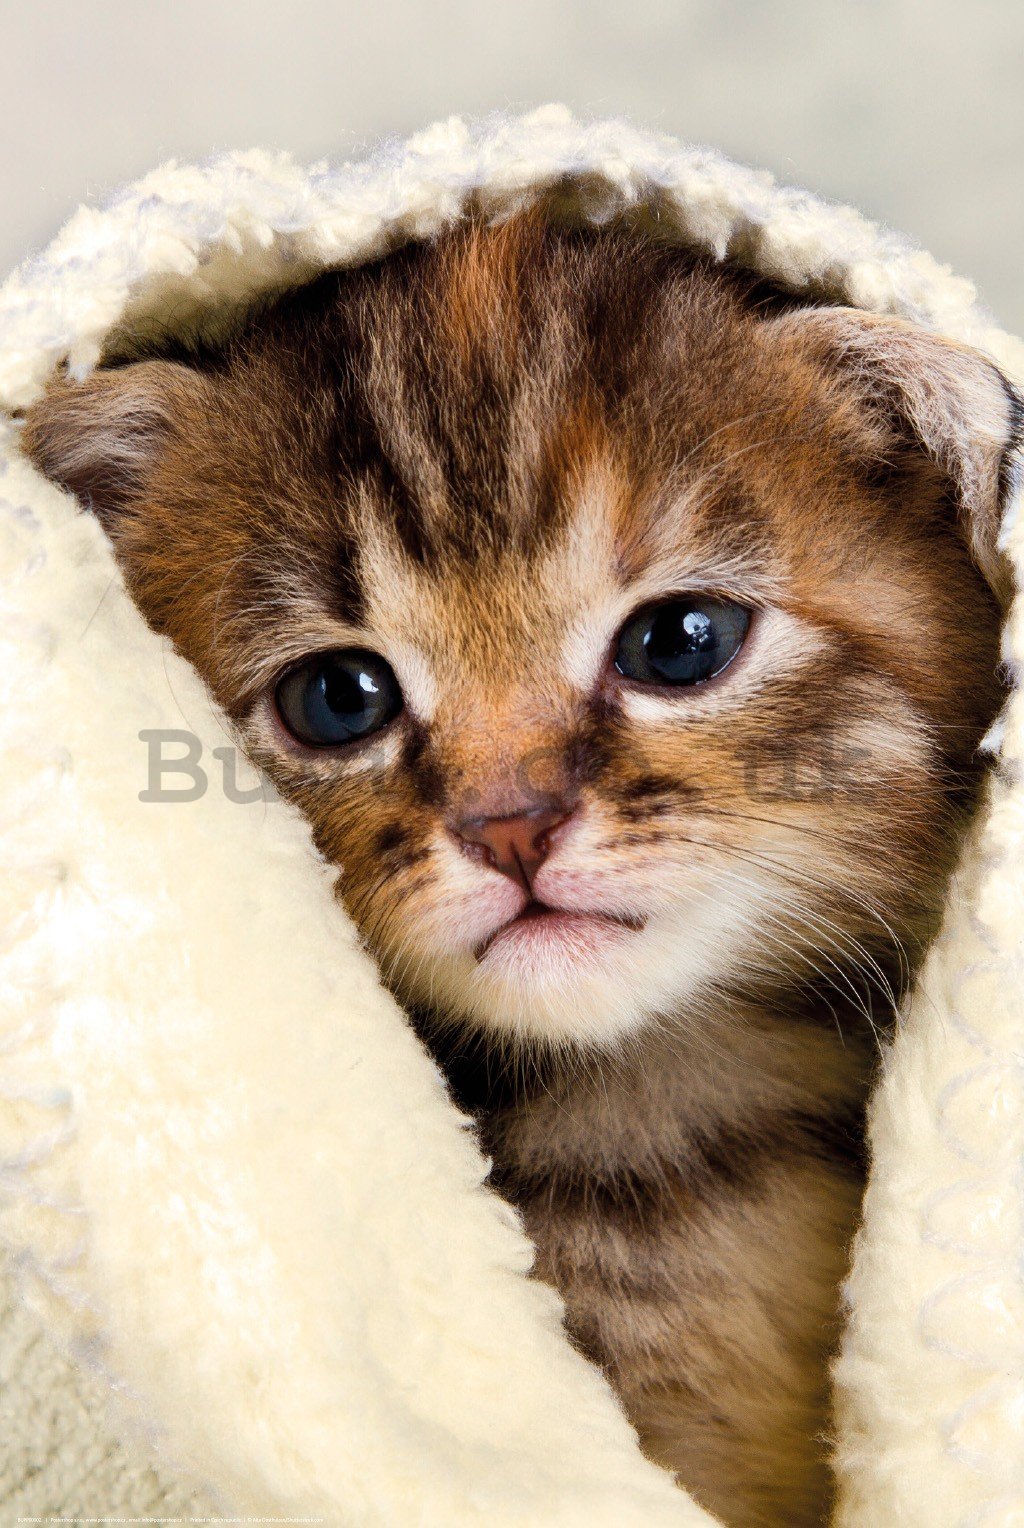 Poster: Kitten in a towel